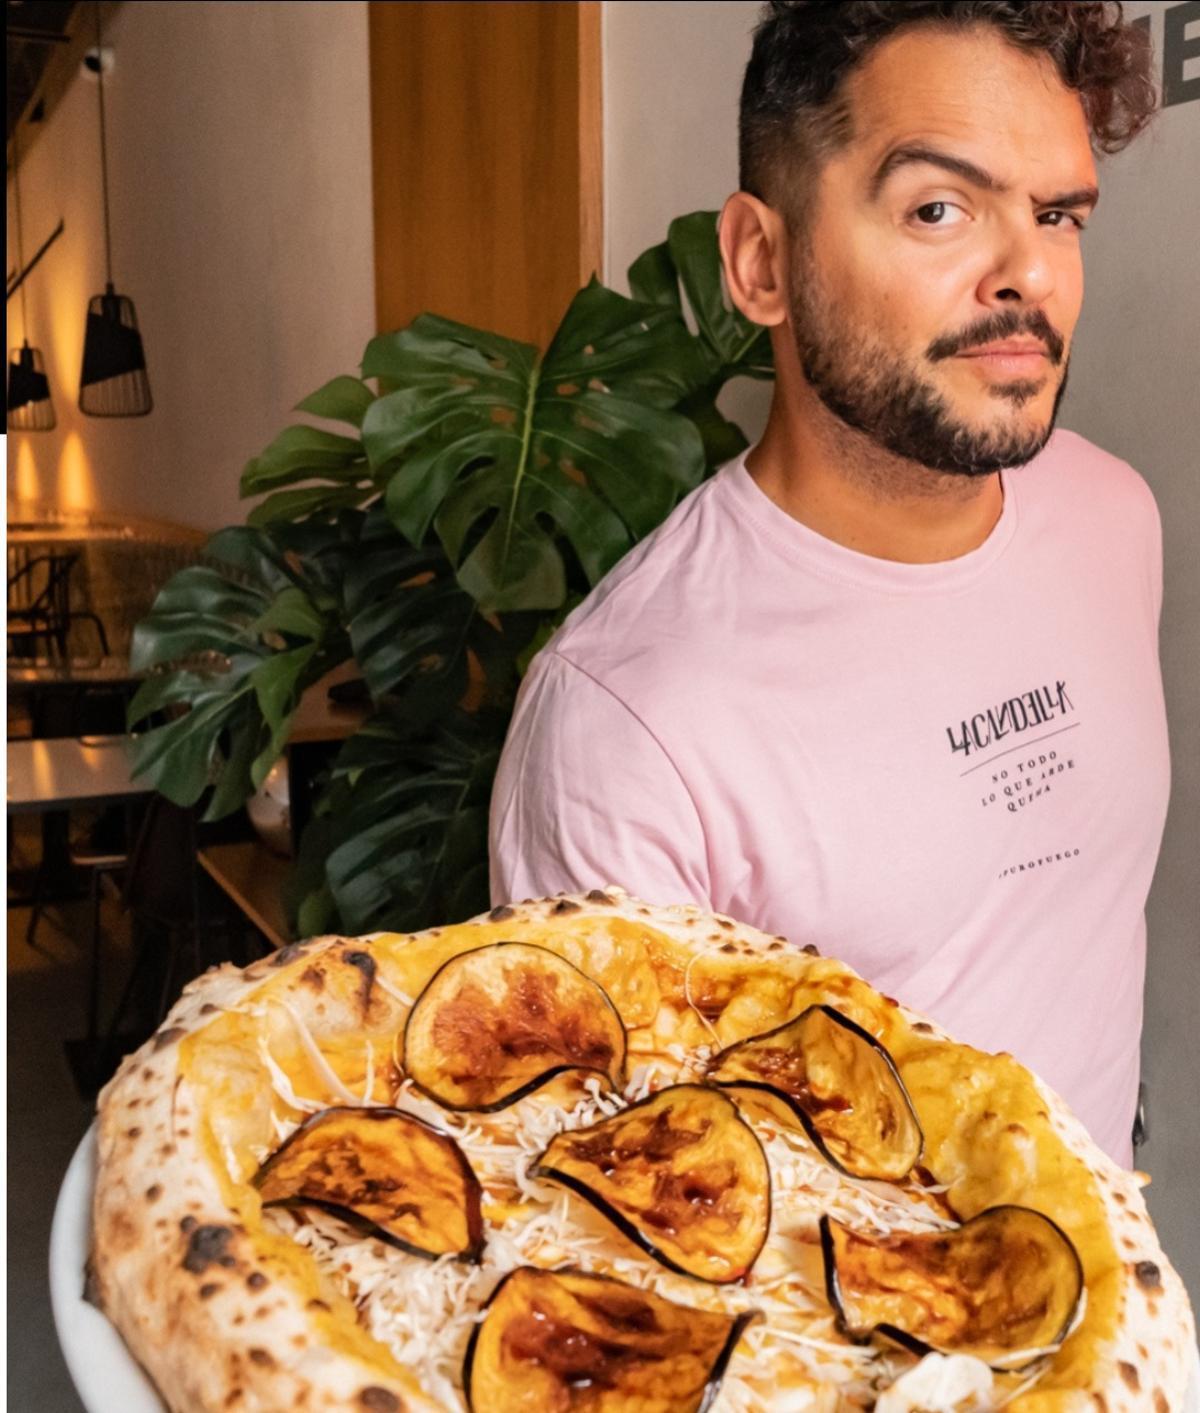 Pizzería La Candella: La historia de la pizza napolitana en Canarias, apoyando el campo canario